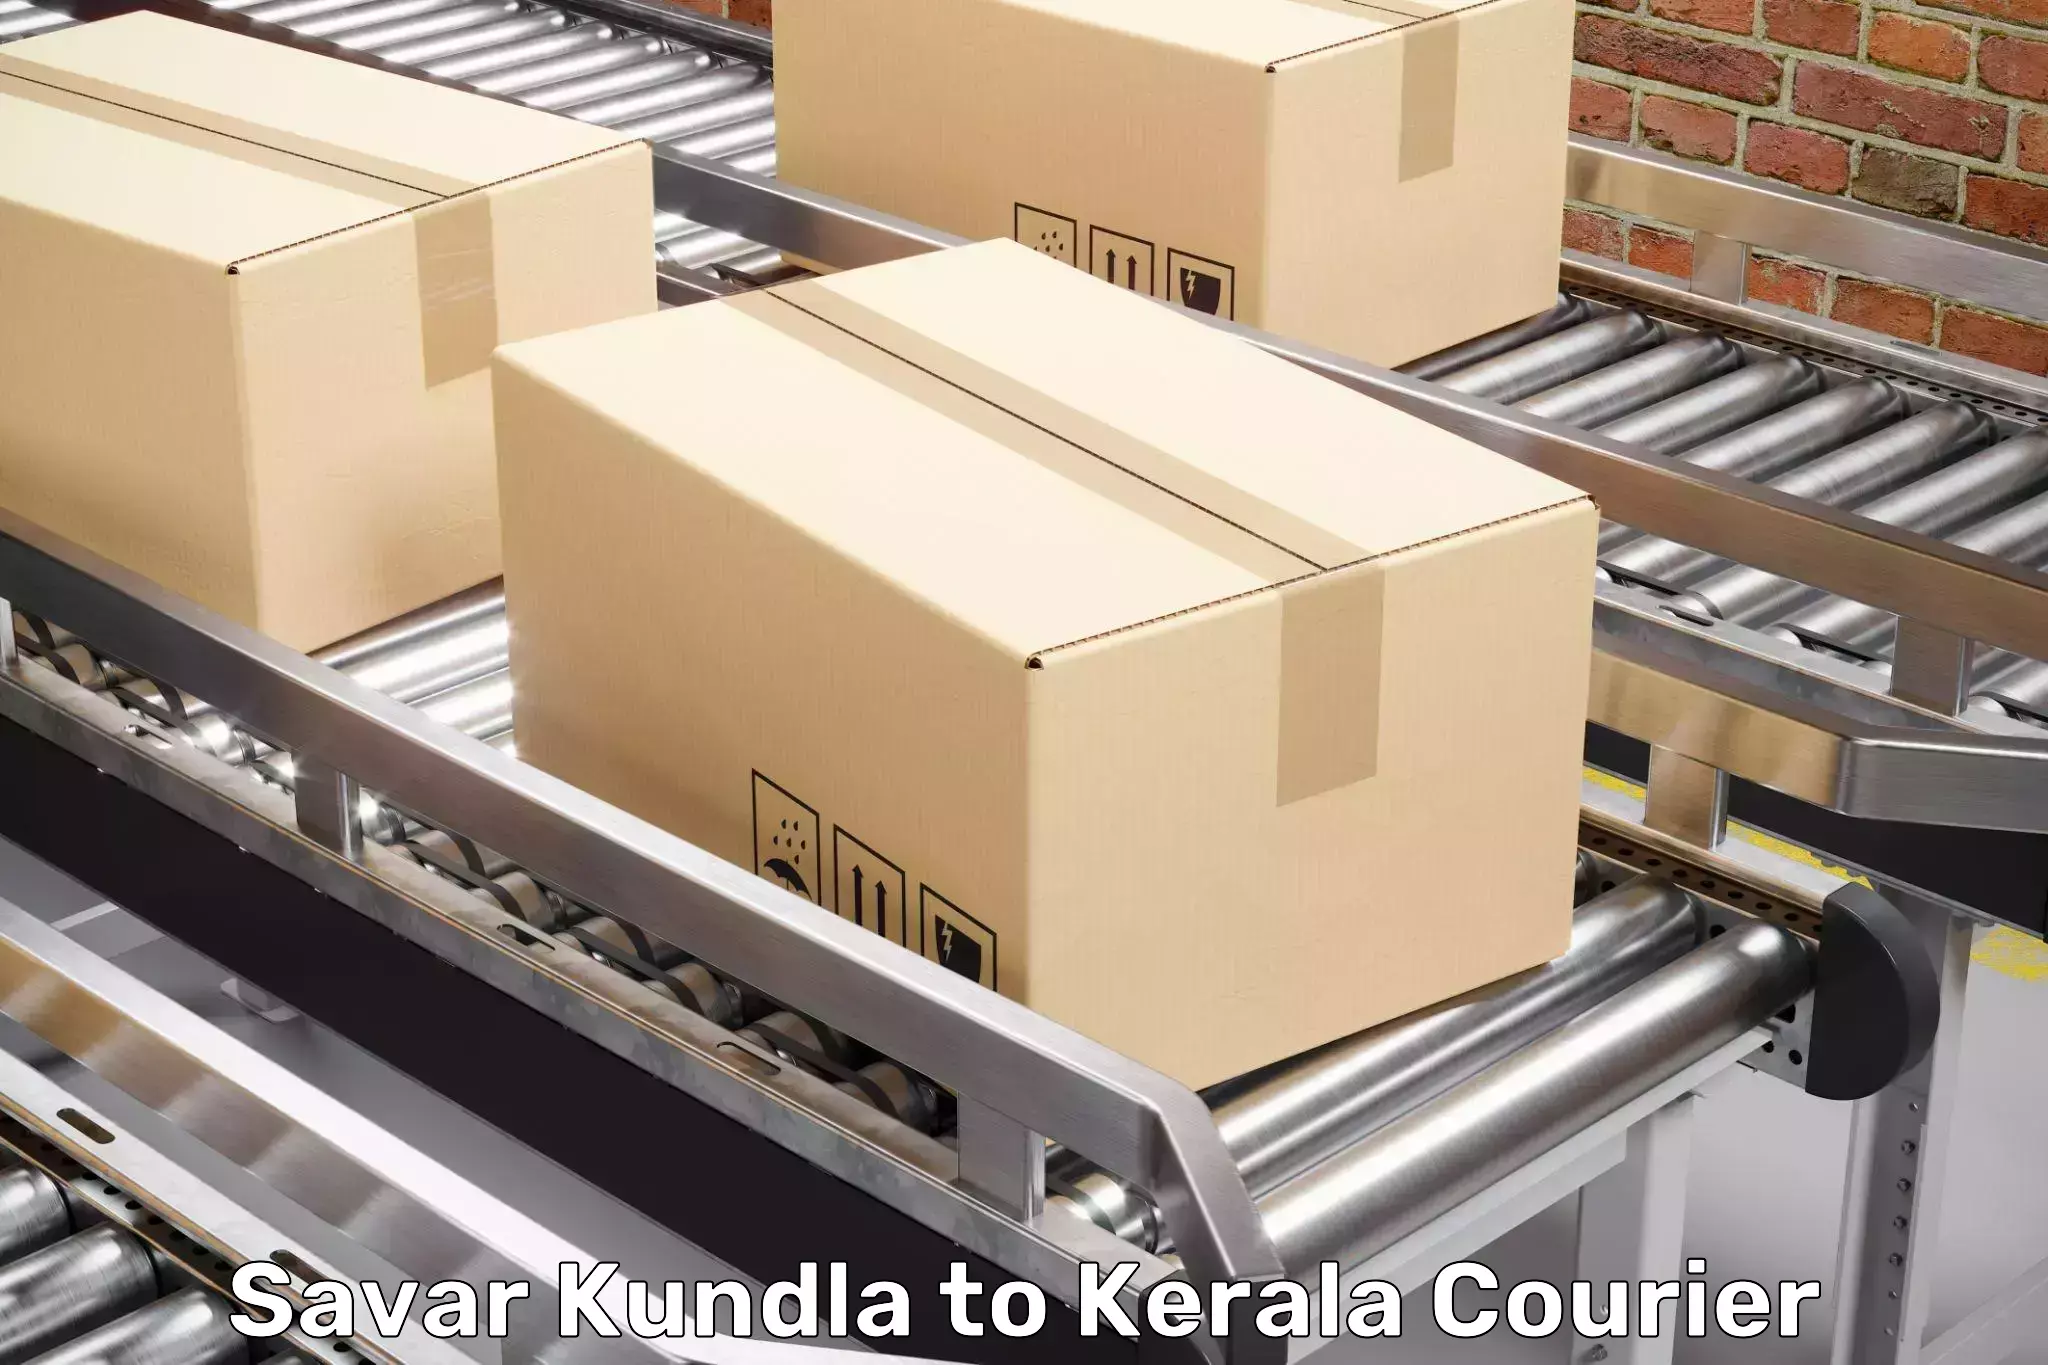 Furniture moving experts Savar Kundla to Tiruvalla